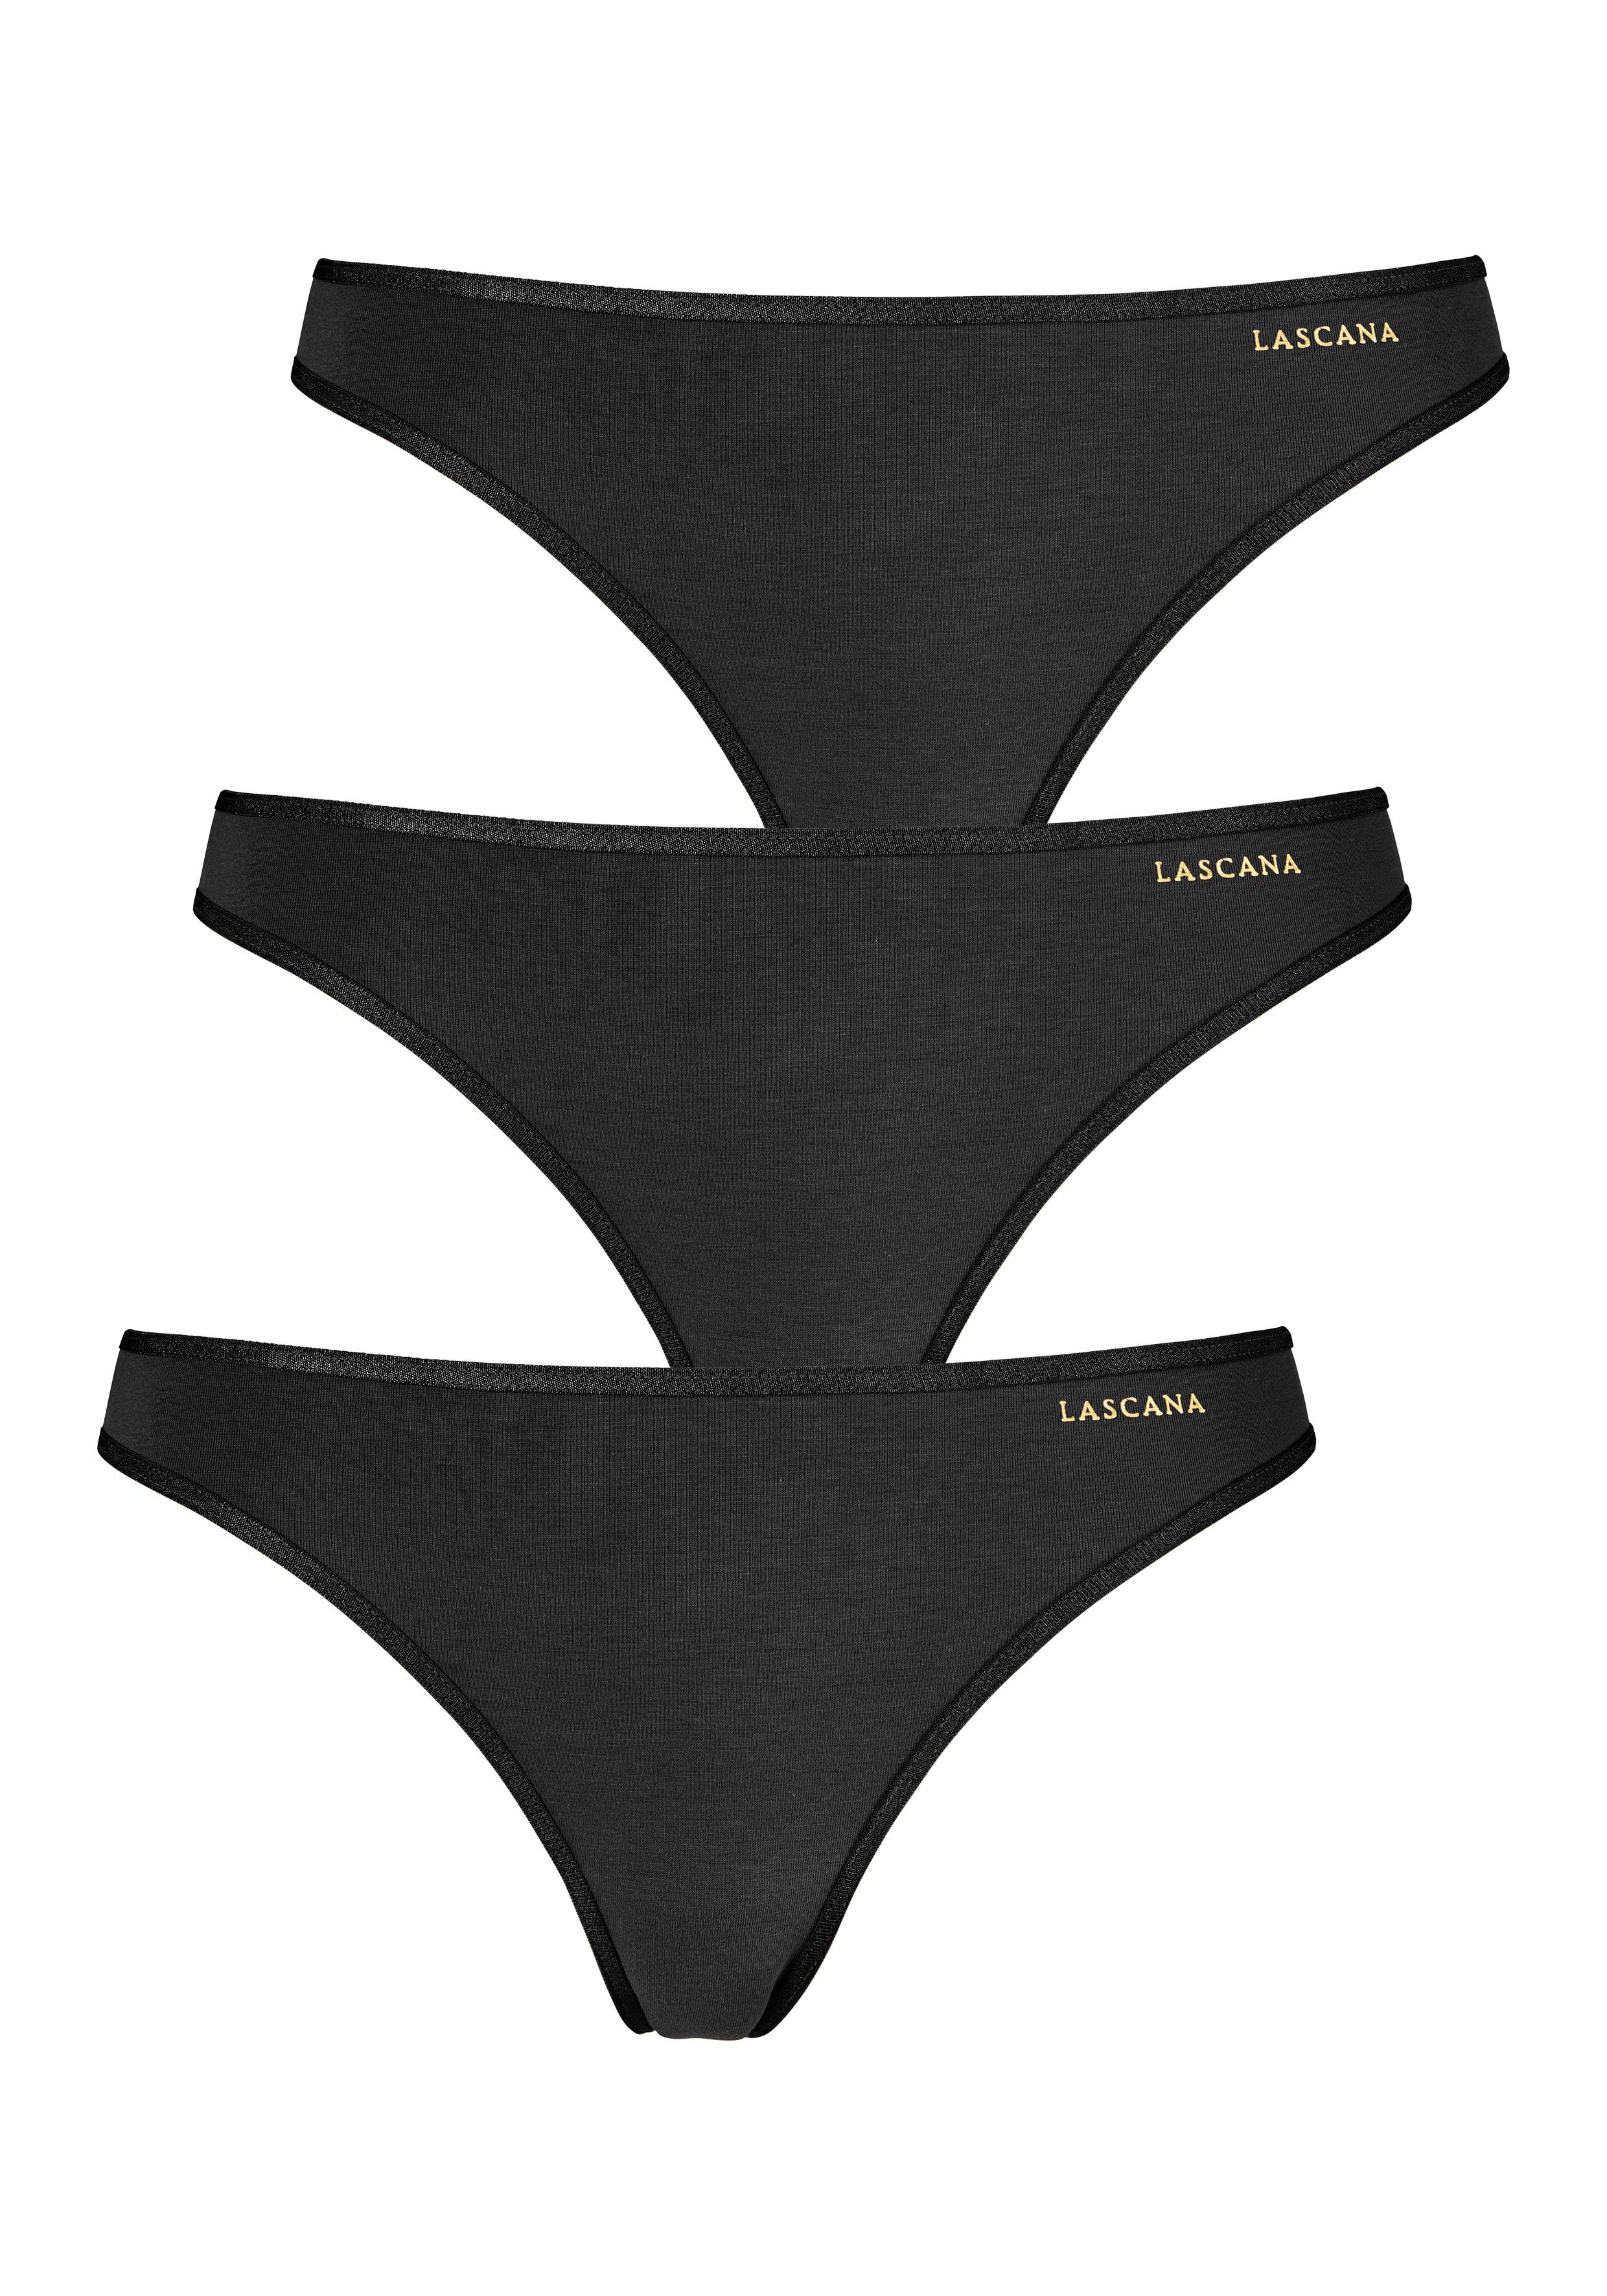 Wäsche/Bademode Unterhosen LASCANA String (3 Stück) mit goldfarbenem Logodruck